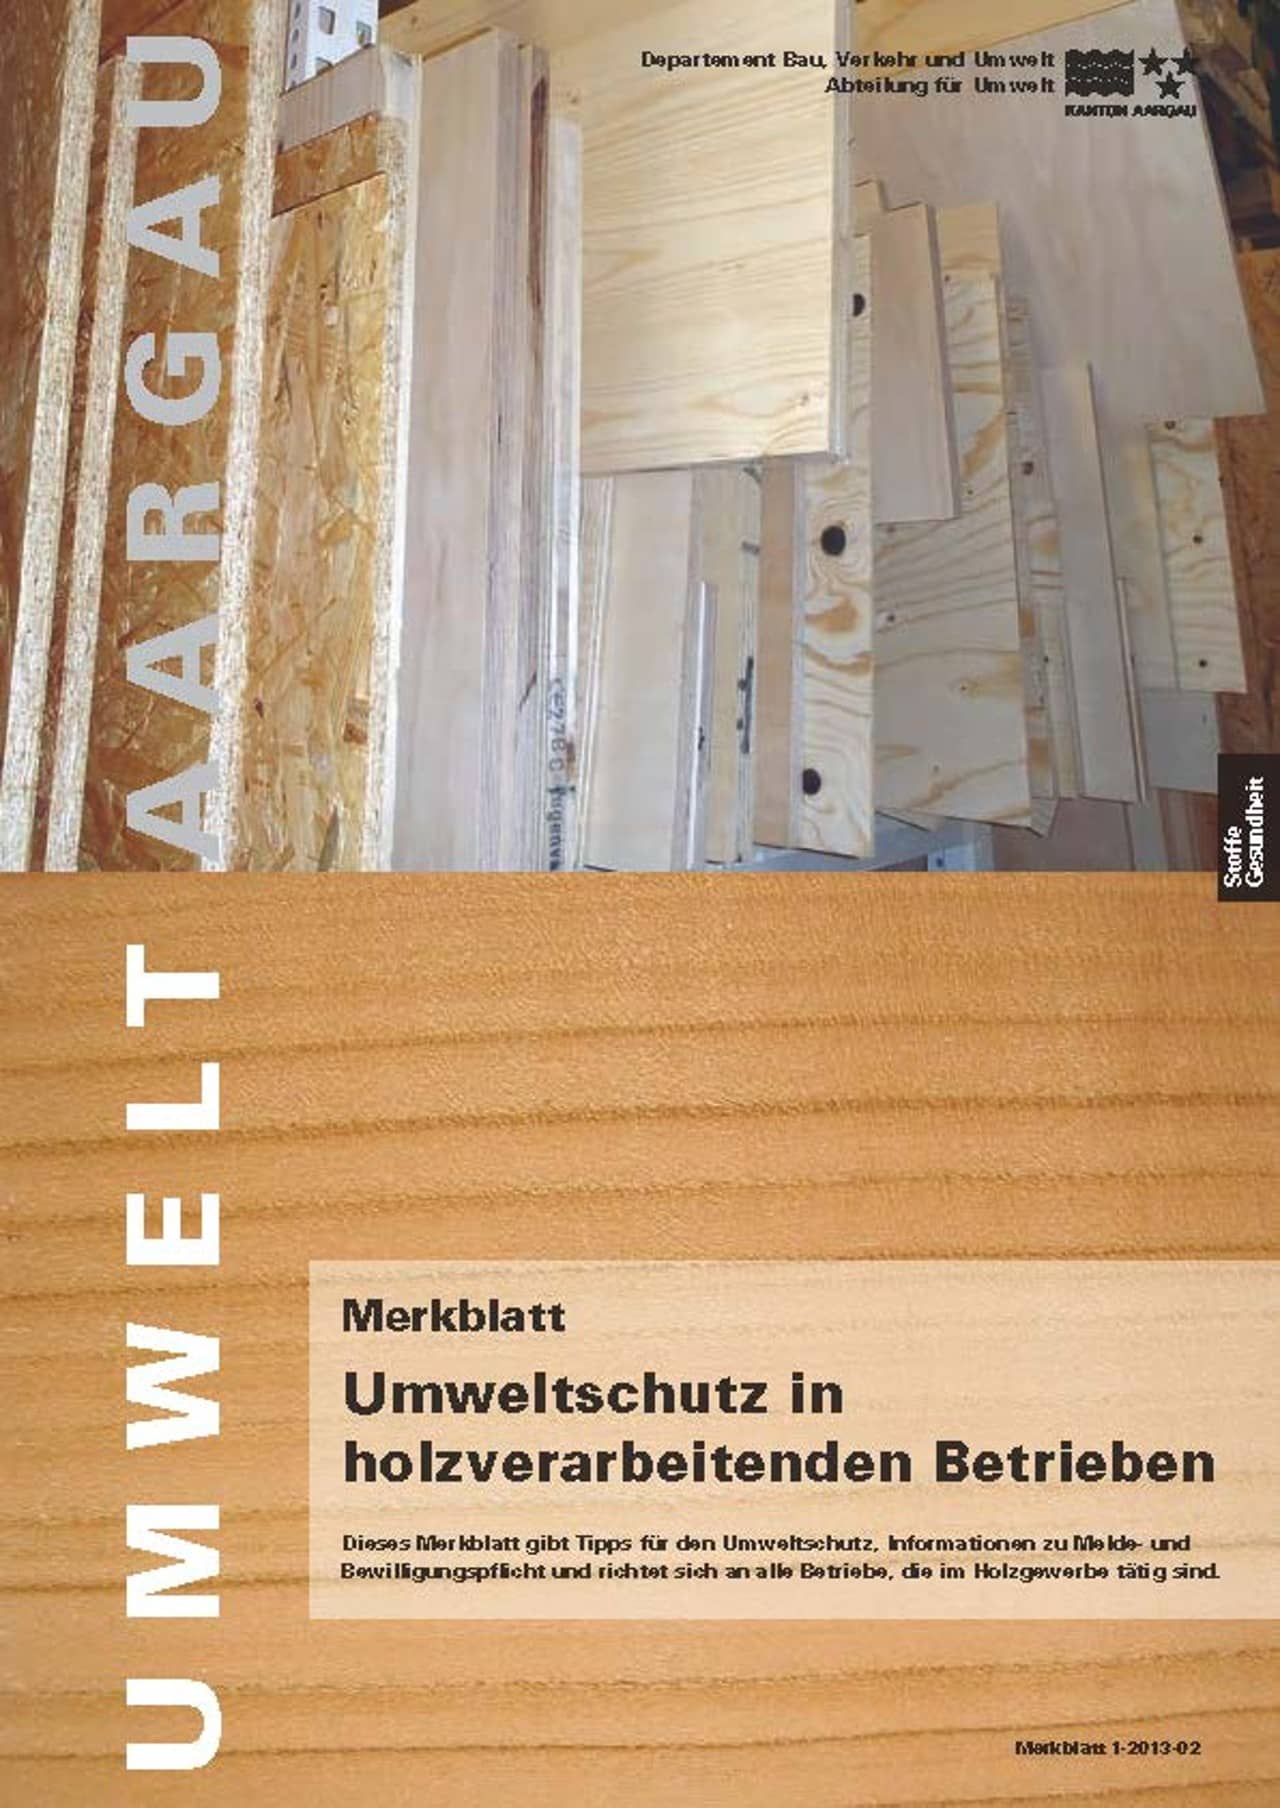 Titelblatt des Merkblattes "Umweltschutz in holzverarbeitenden Betriebe".